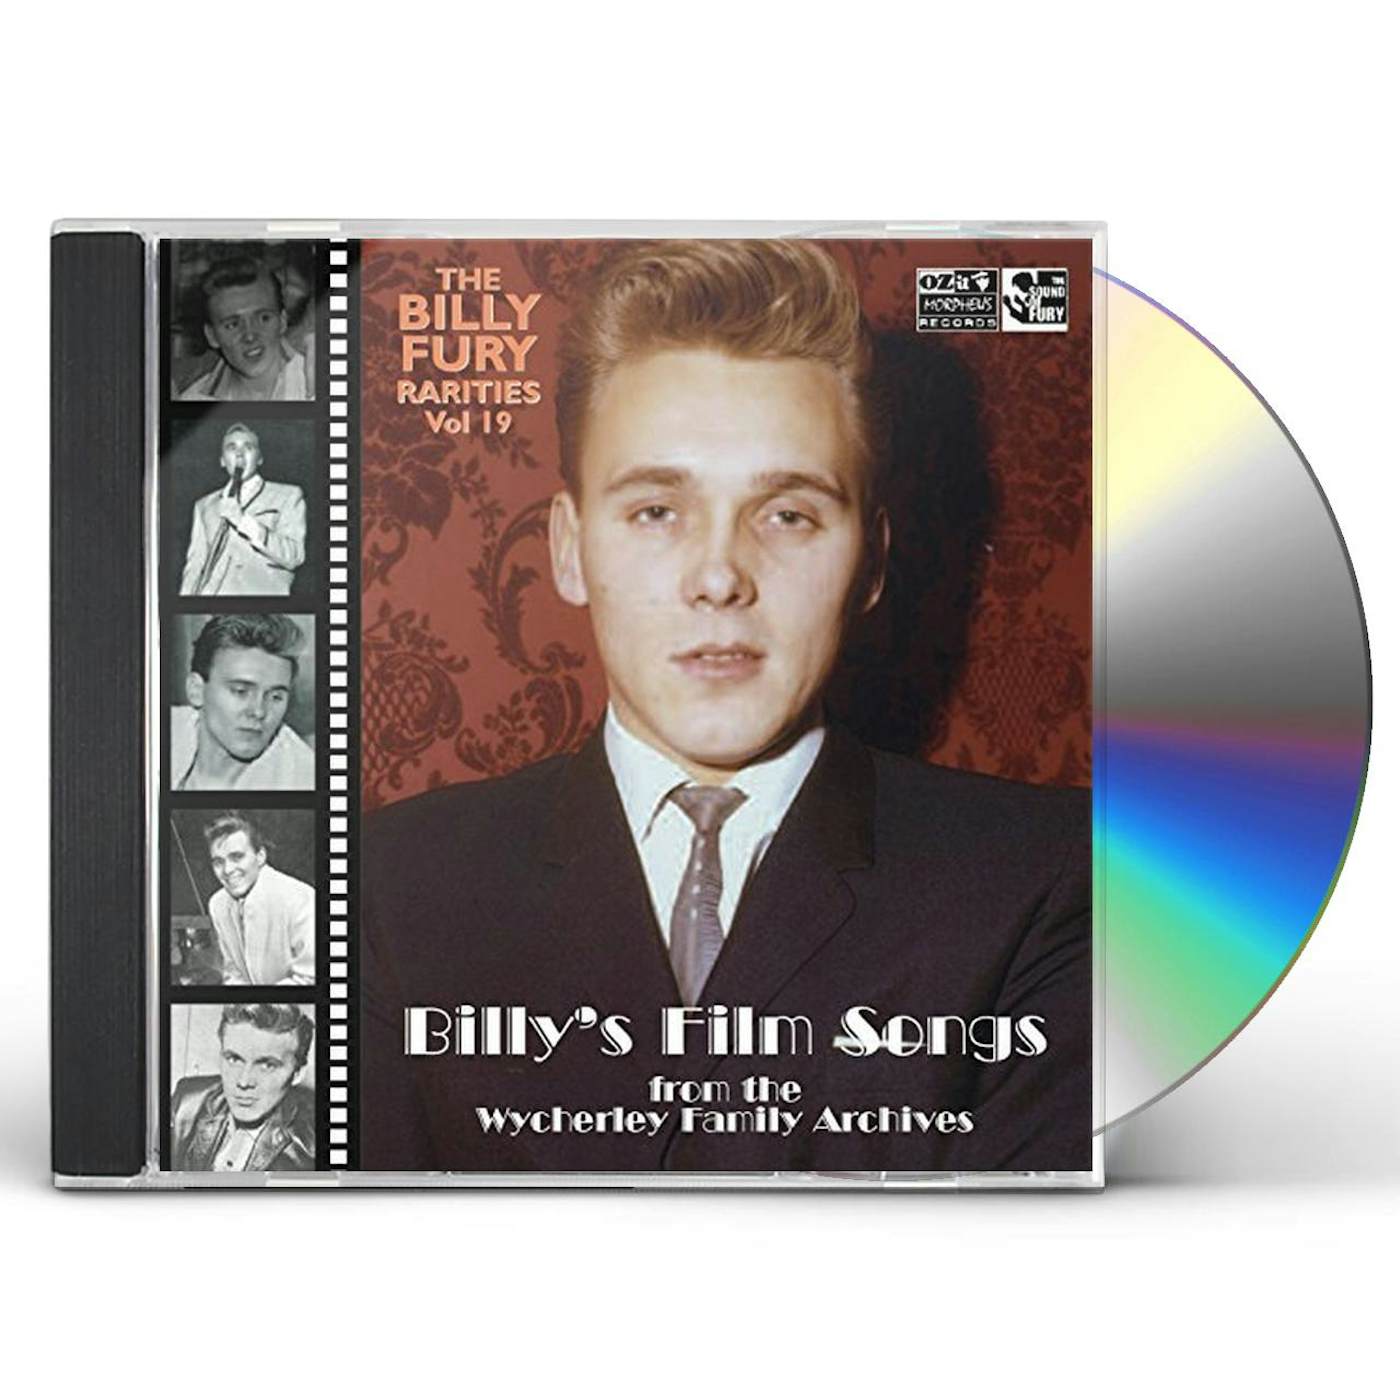 Billy Fury RARITIES 19 (BILLY'S FILM SONGS) CD